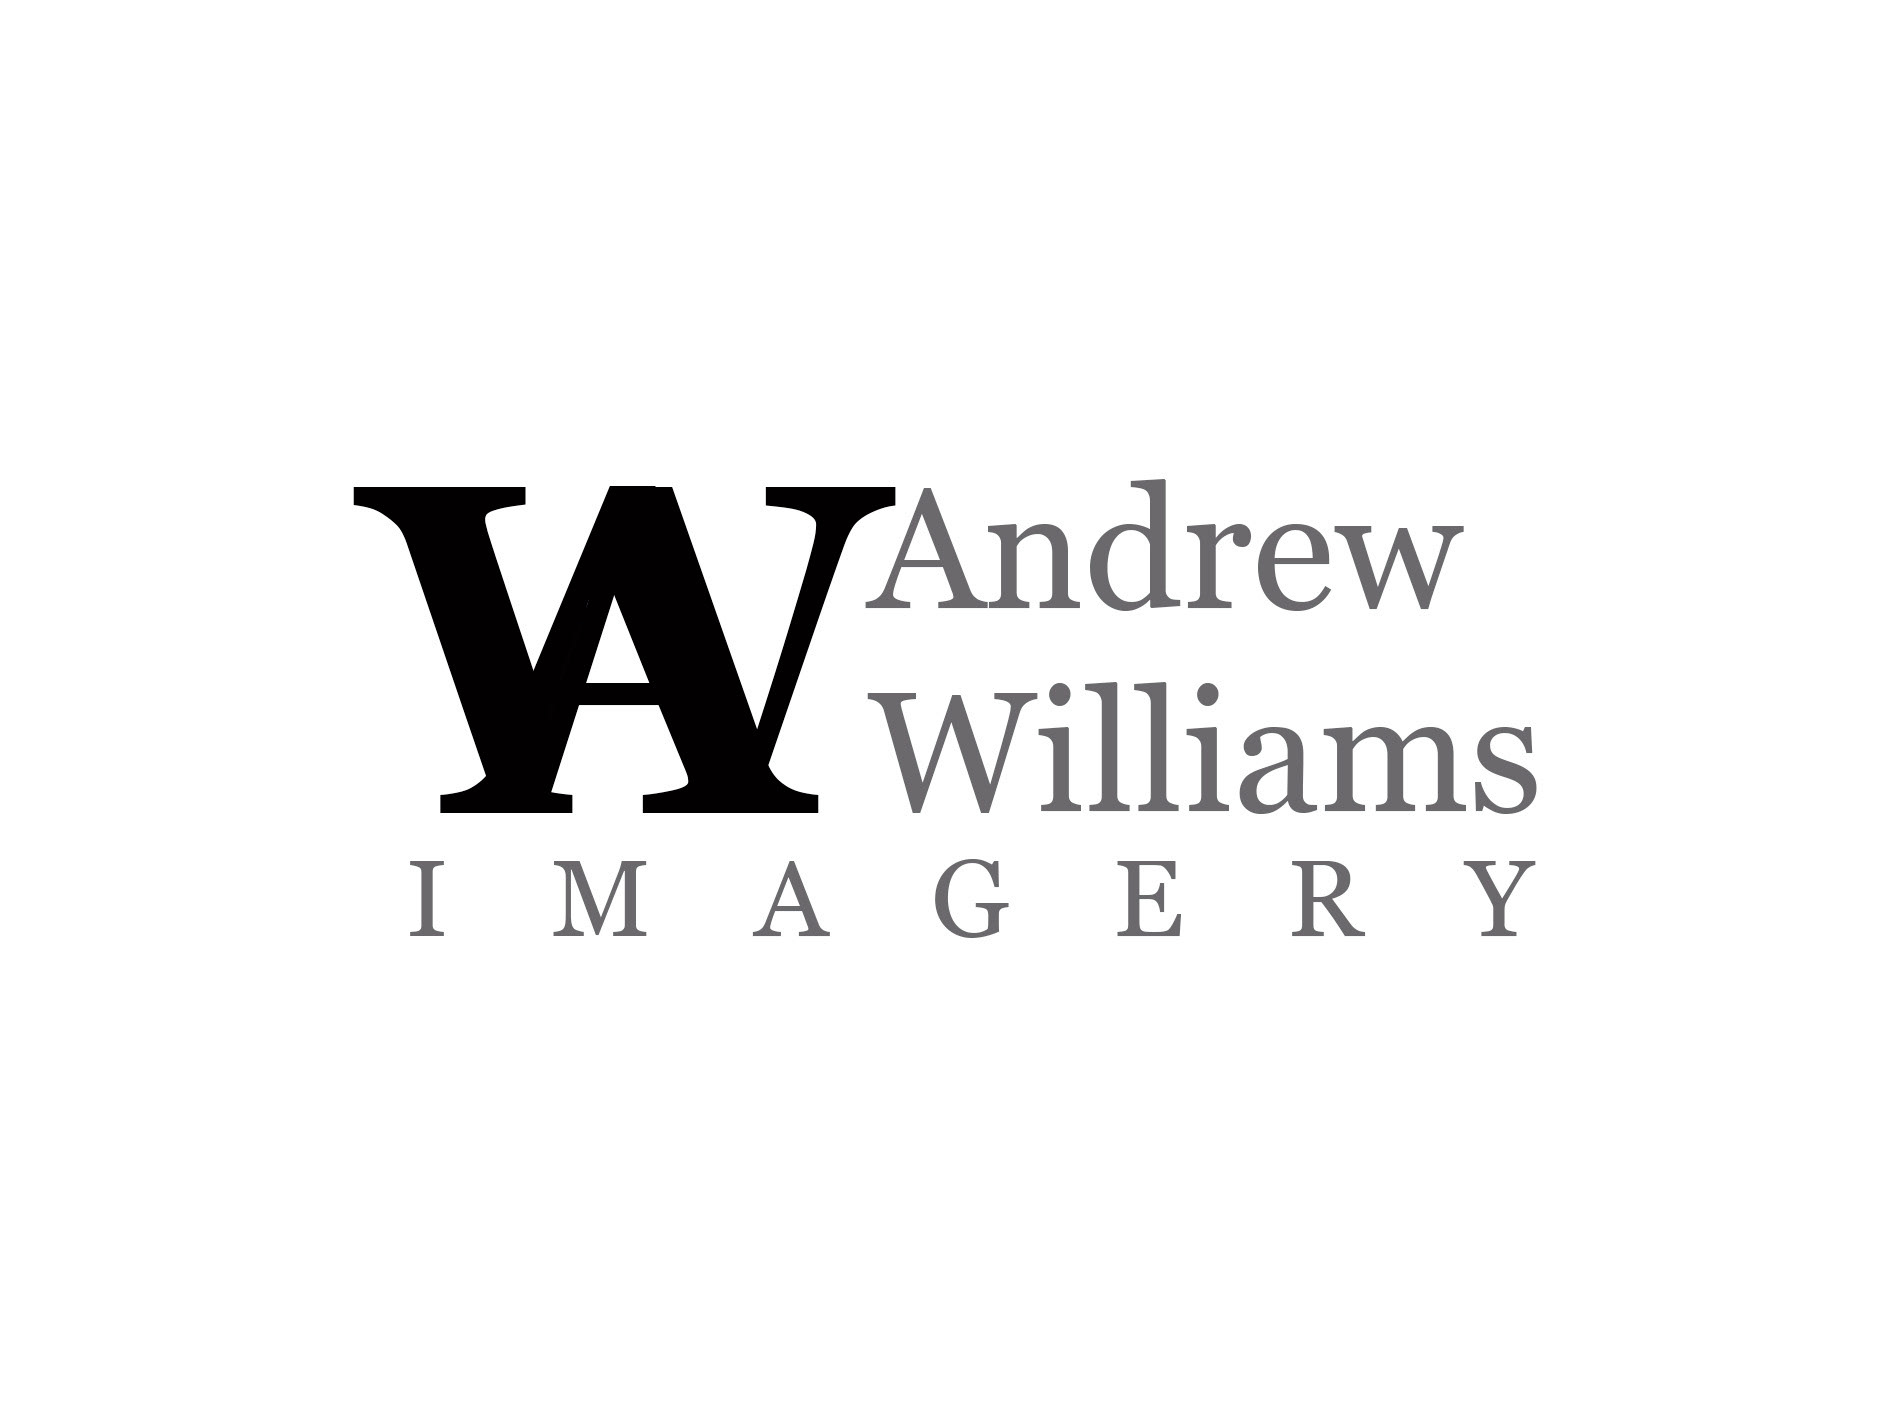 Andrew Williams